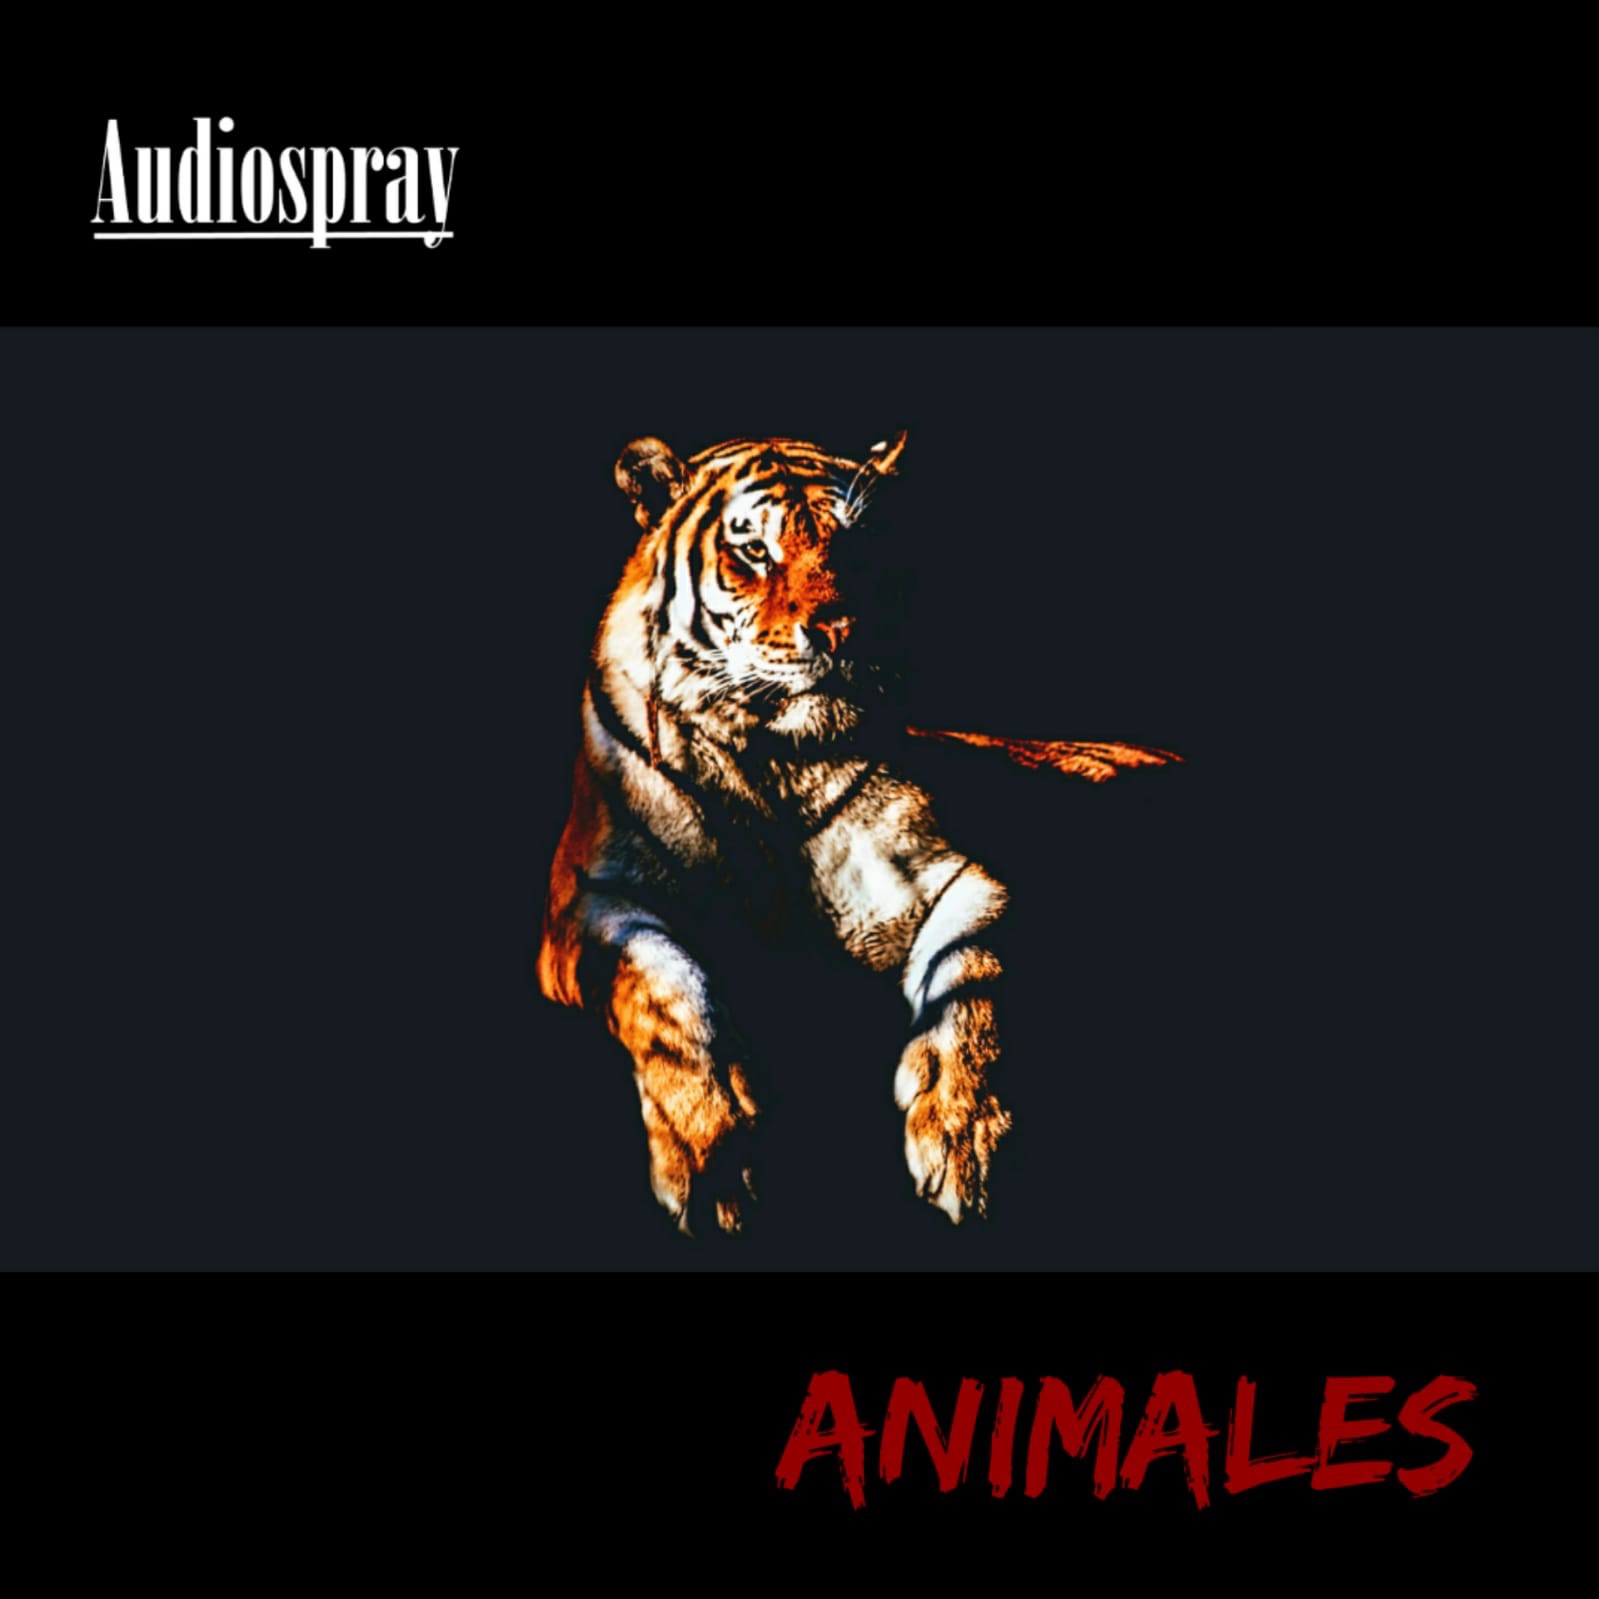 La banda Audiospray cierra el 2018 con el video “Animales”  